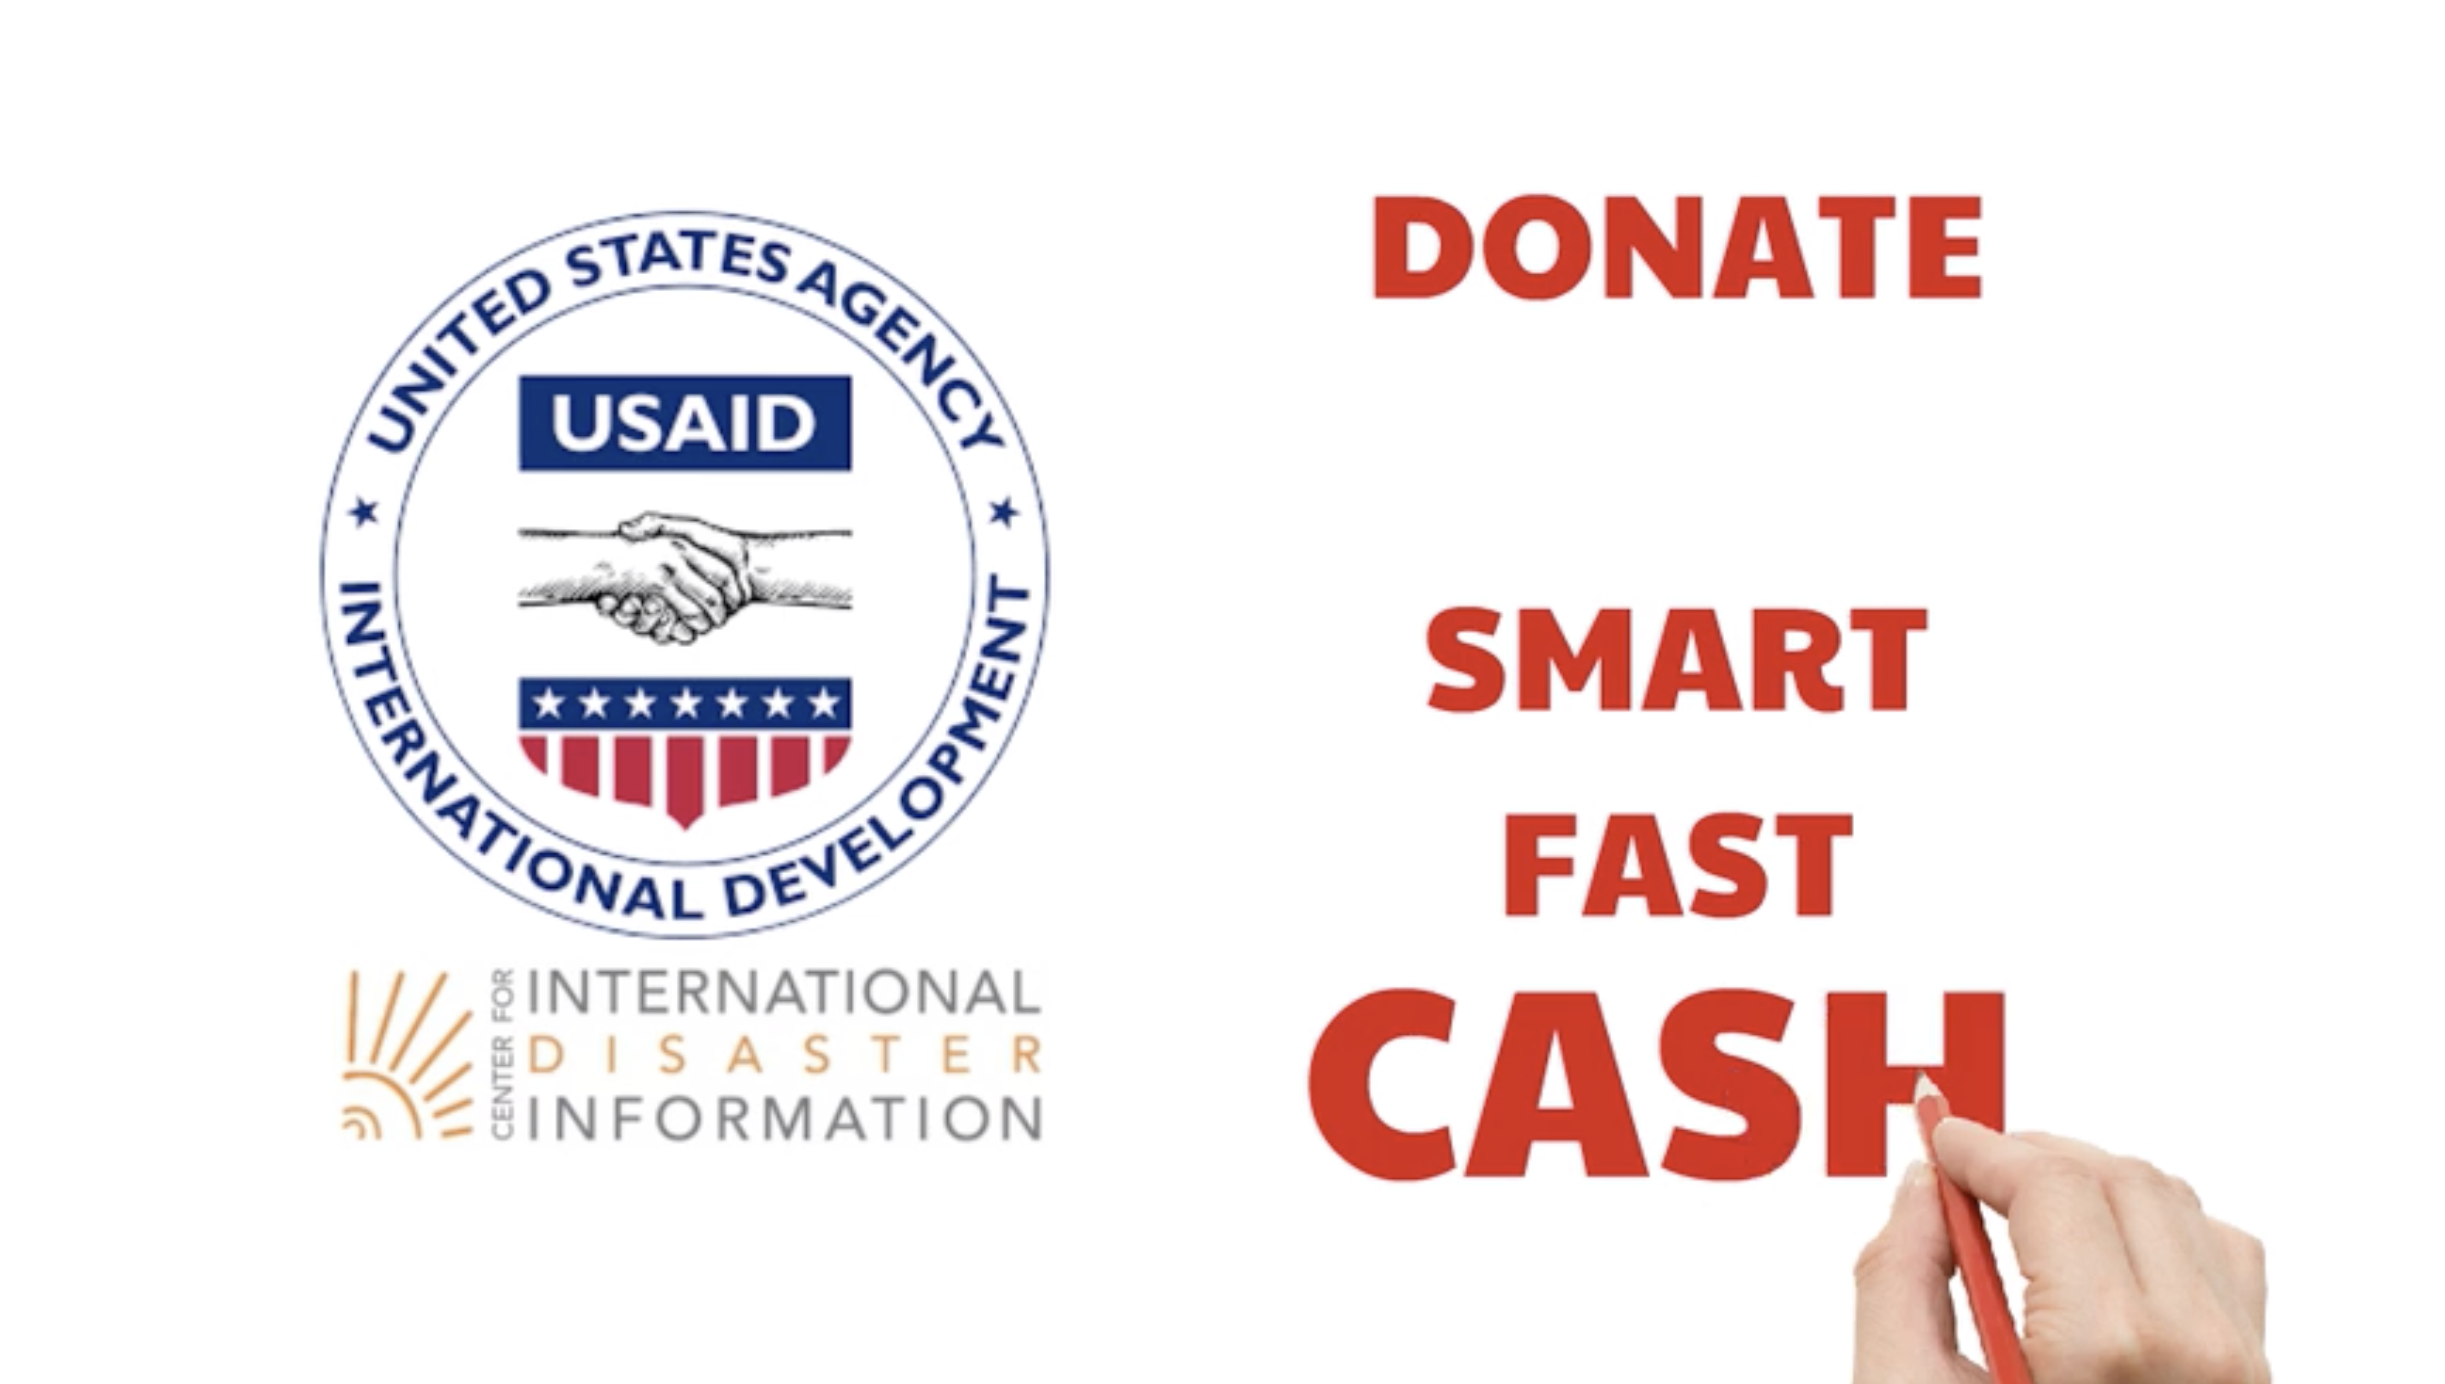 Donate Smart, Fast. Donate Cash